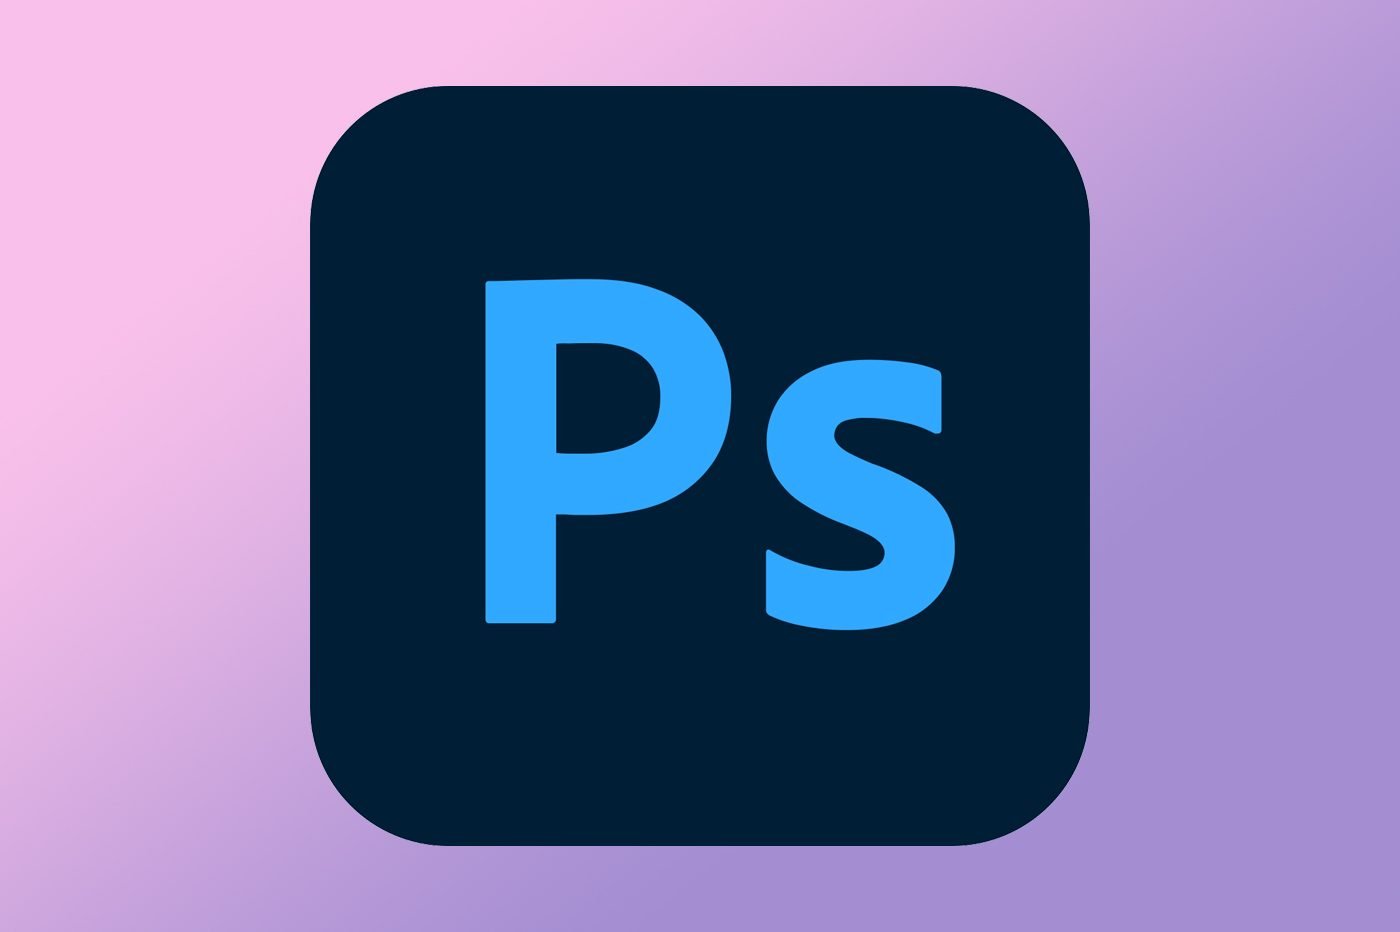 Photoshop va devenir encore plus incontournable, Adobe a décidé de le rendre… gratuit - 01net.com